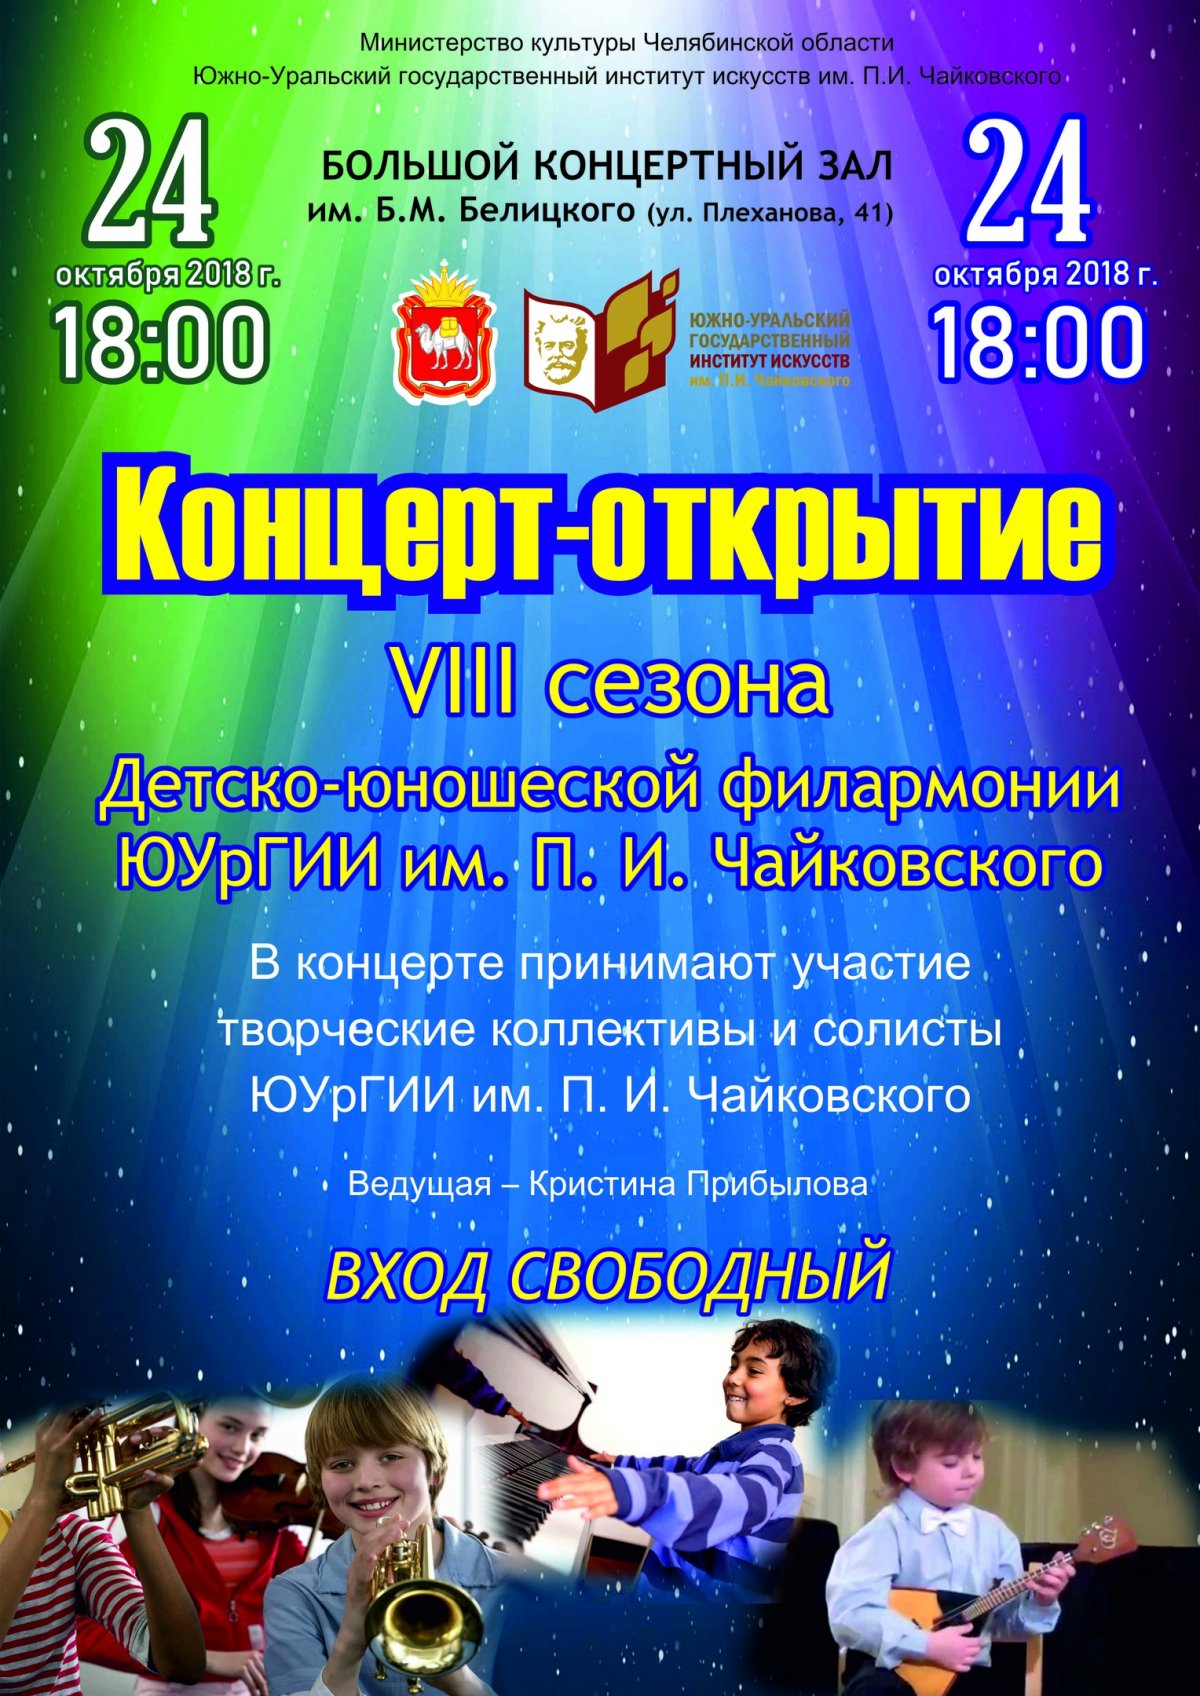 24 октября в 18.00 в БКЗ им. Б. М. Белицкого состоится концерт-открытие Детско-юношеской филармонии.